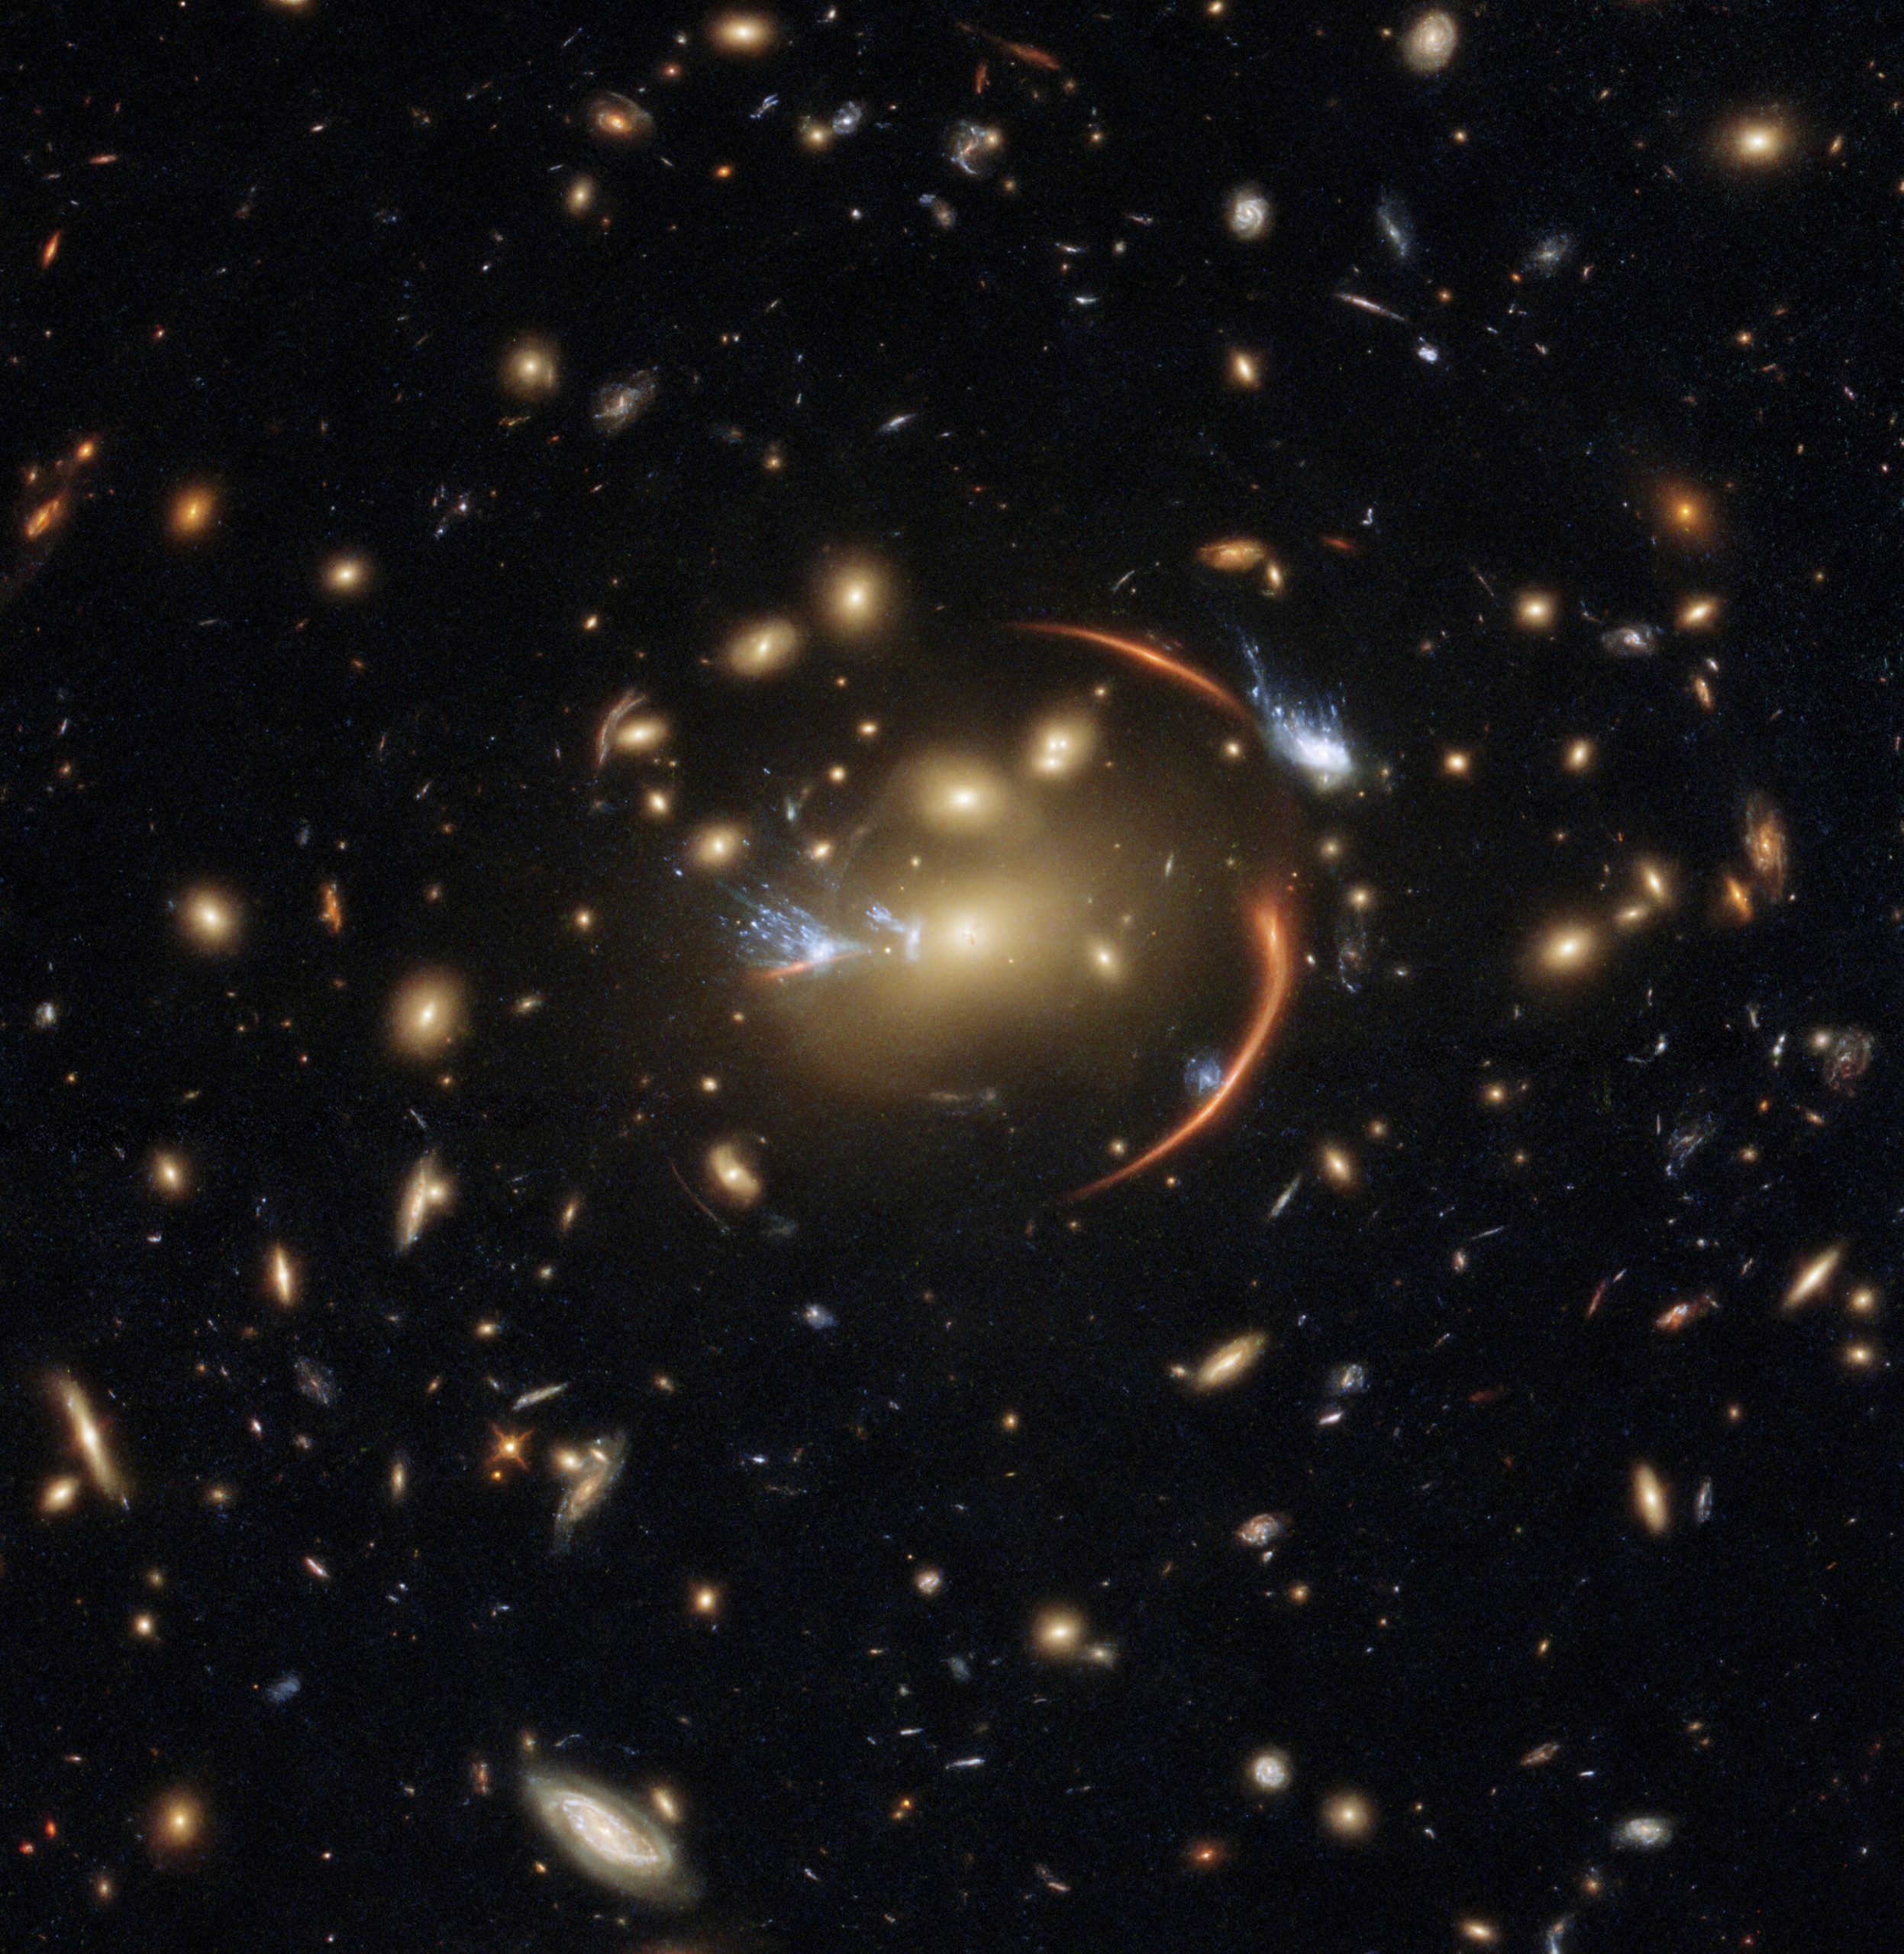 Изображение Августа включает соседнее скопление галактик, получившее название MACSJ0138.0-2155, которое является невероятным примером гравитационного линзирования, поскольку мы видим проблески гораздо более далекой галактики, где звезды больше не образуются. Предоставлено: ЕКА / Хаббл и НАСА, А. Ньюман, М. Ахшик, К. Уитакер.